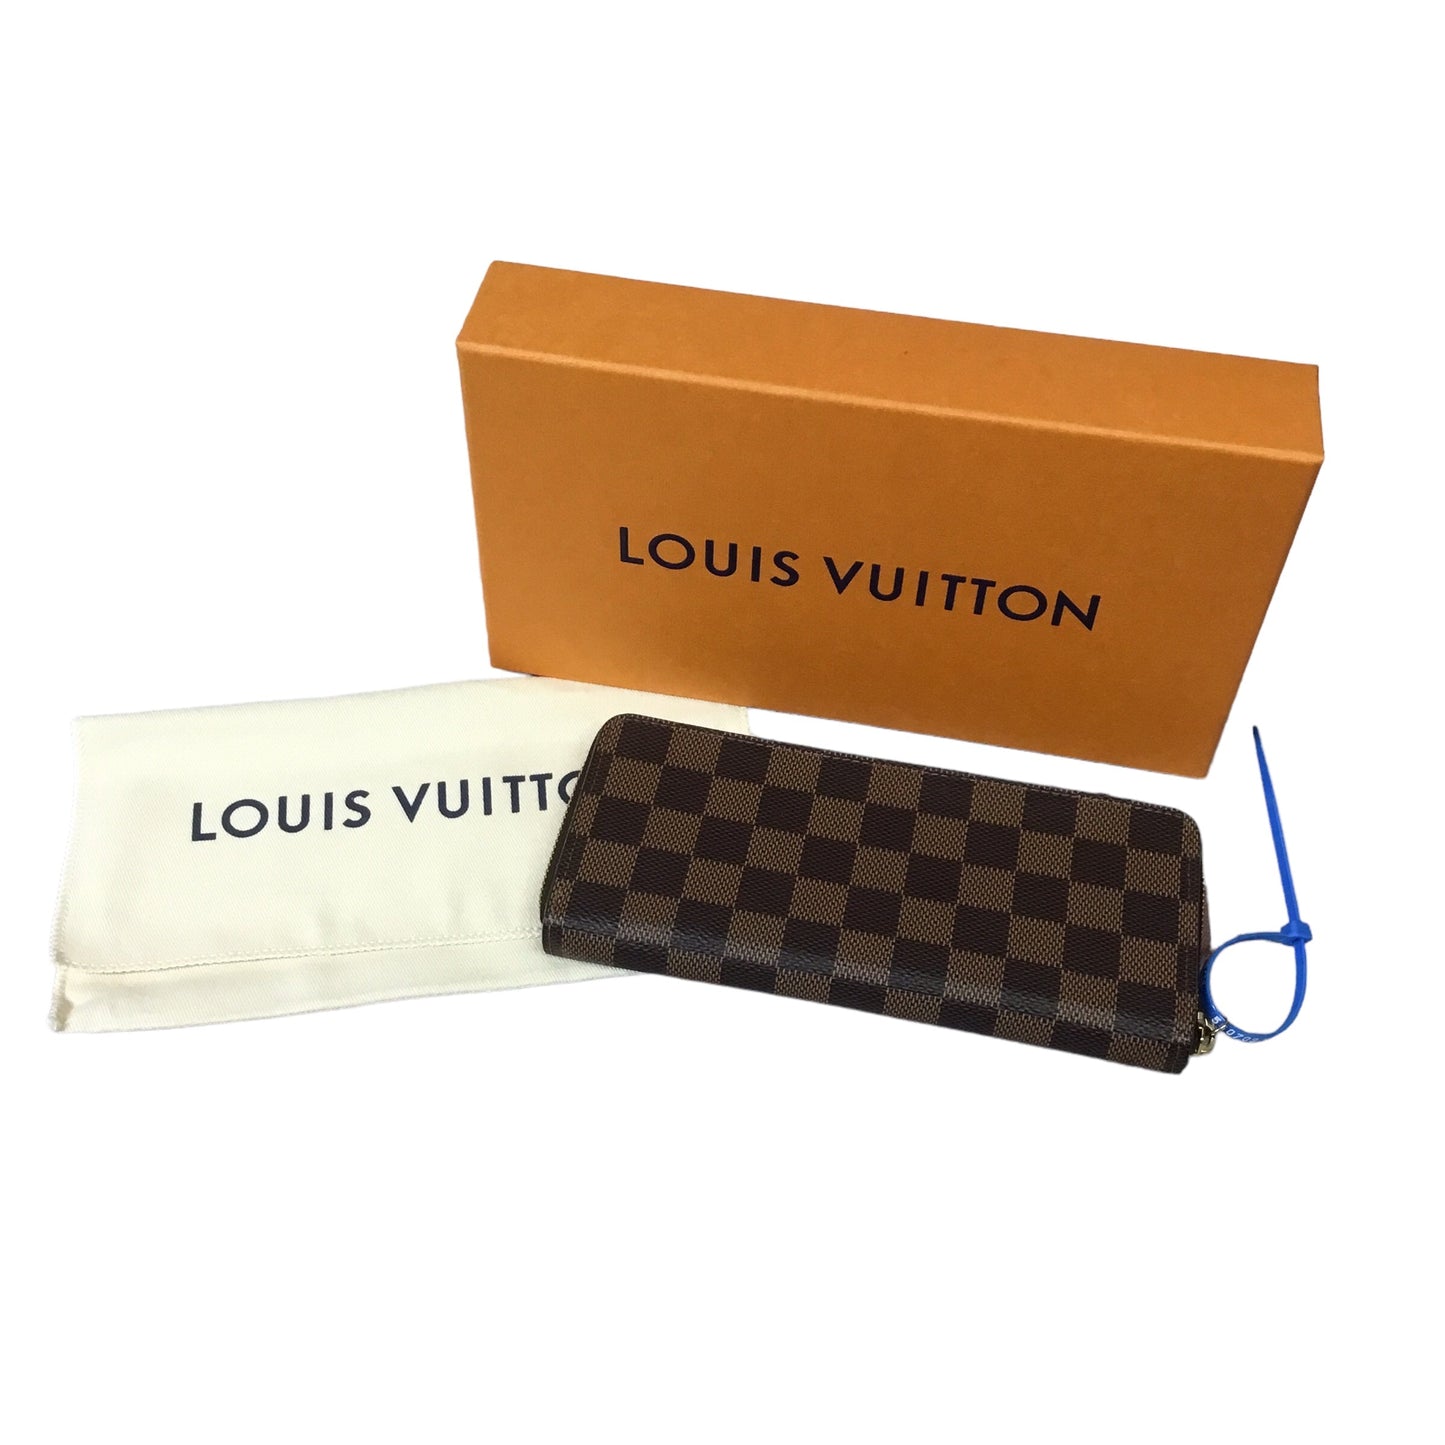 Wallet Luxury Designer Louis Vuitton, Size Medium